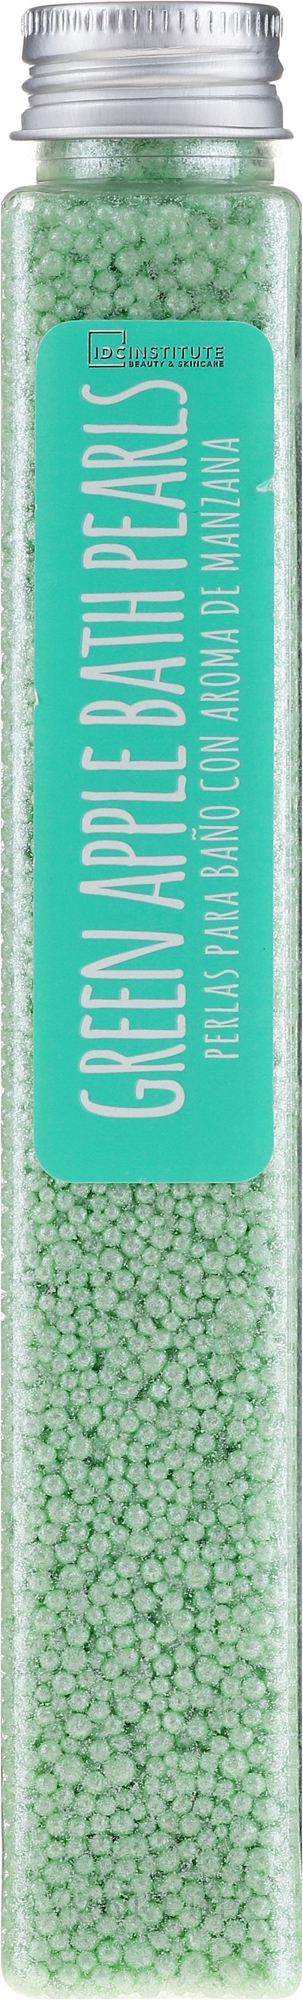 Badeperlen Grüner Apfel - IDC Institute Bath Pearls Green Apple — Bild 90 g